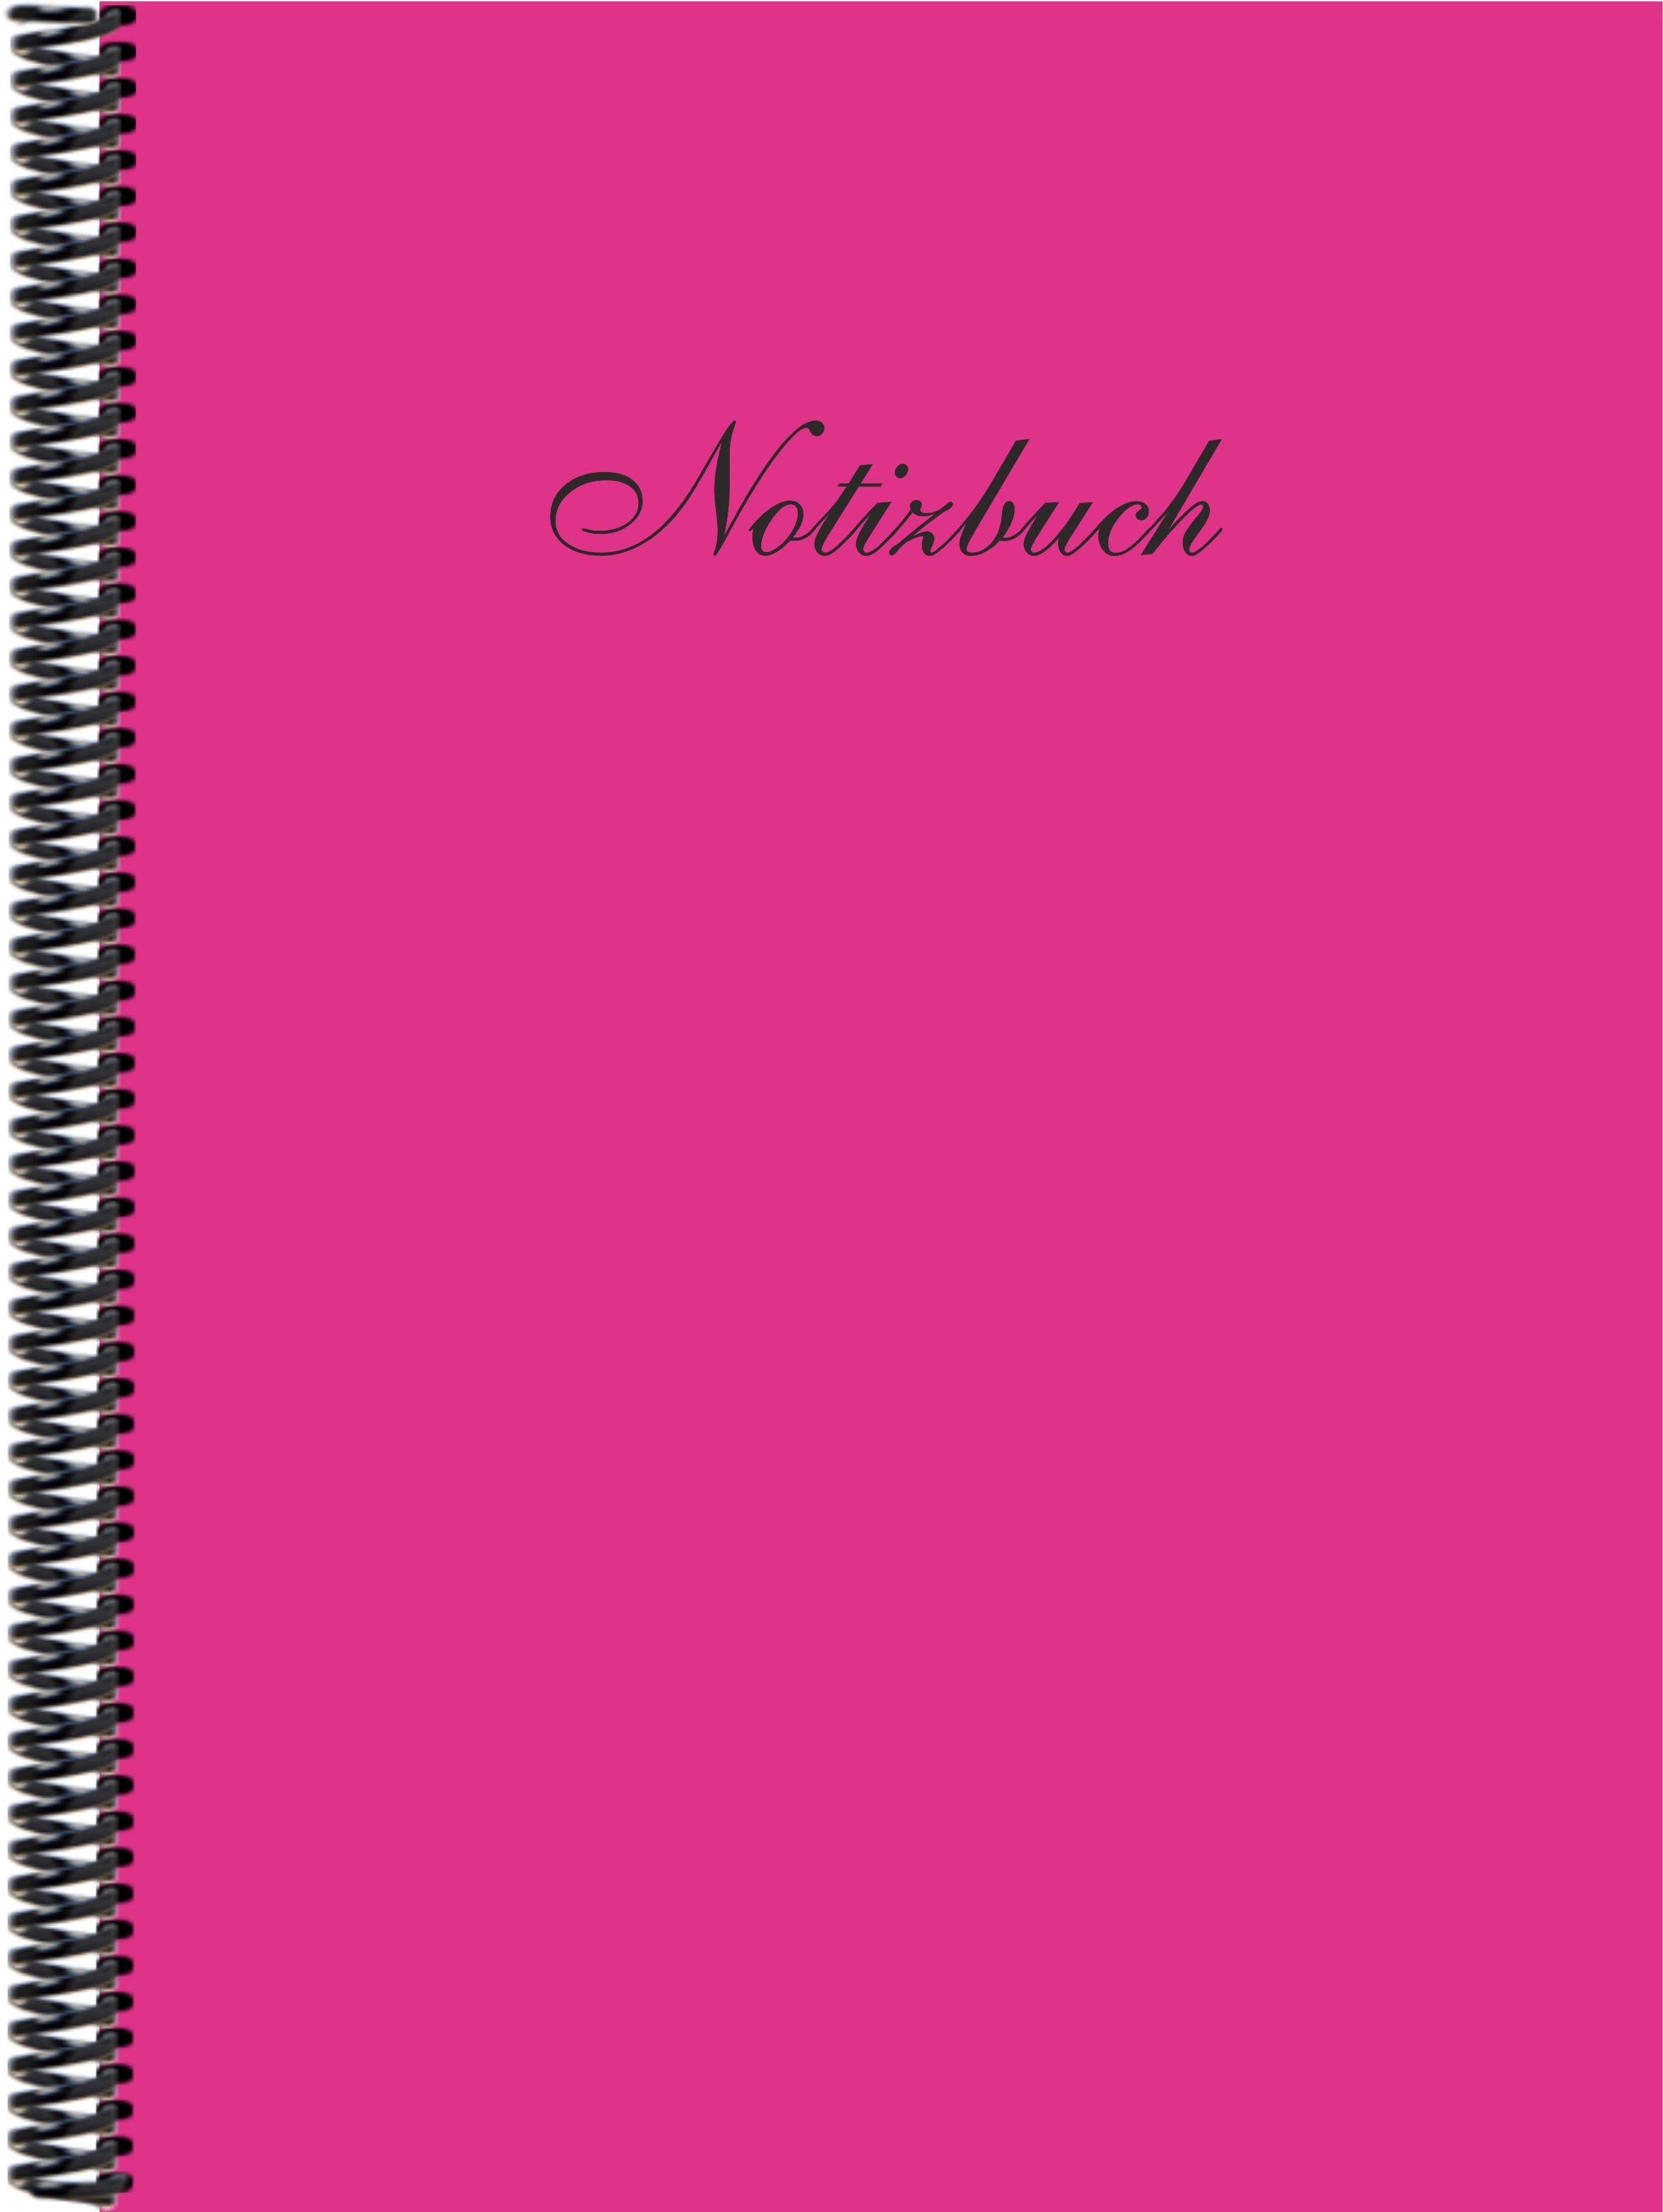 Gmbh Trendfarbe Notizbuch in Notizbuch DINA4 pink liniert, Verlag E&Z der